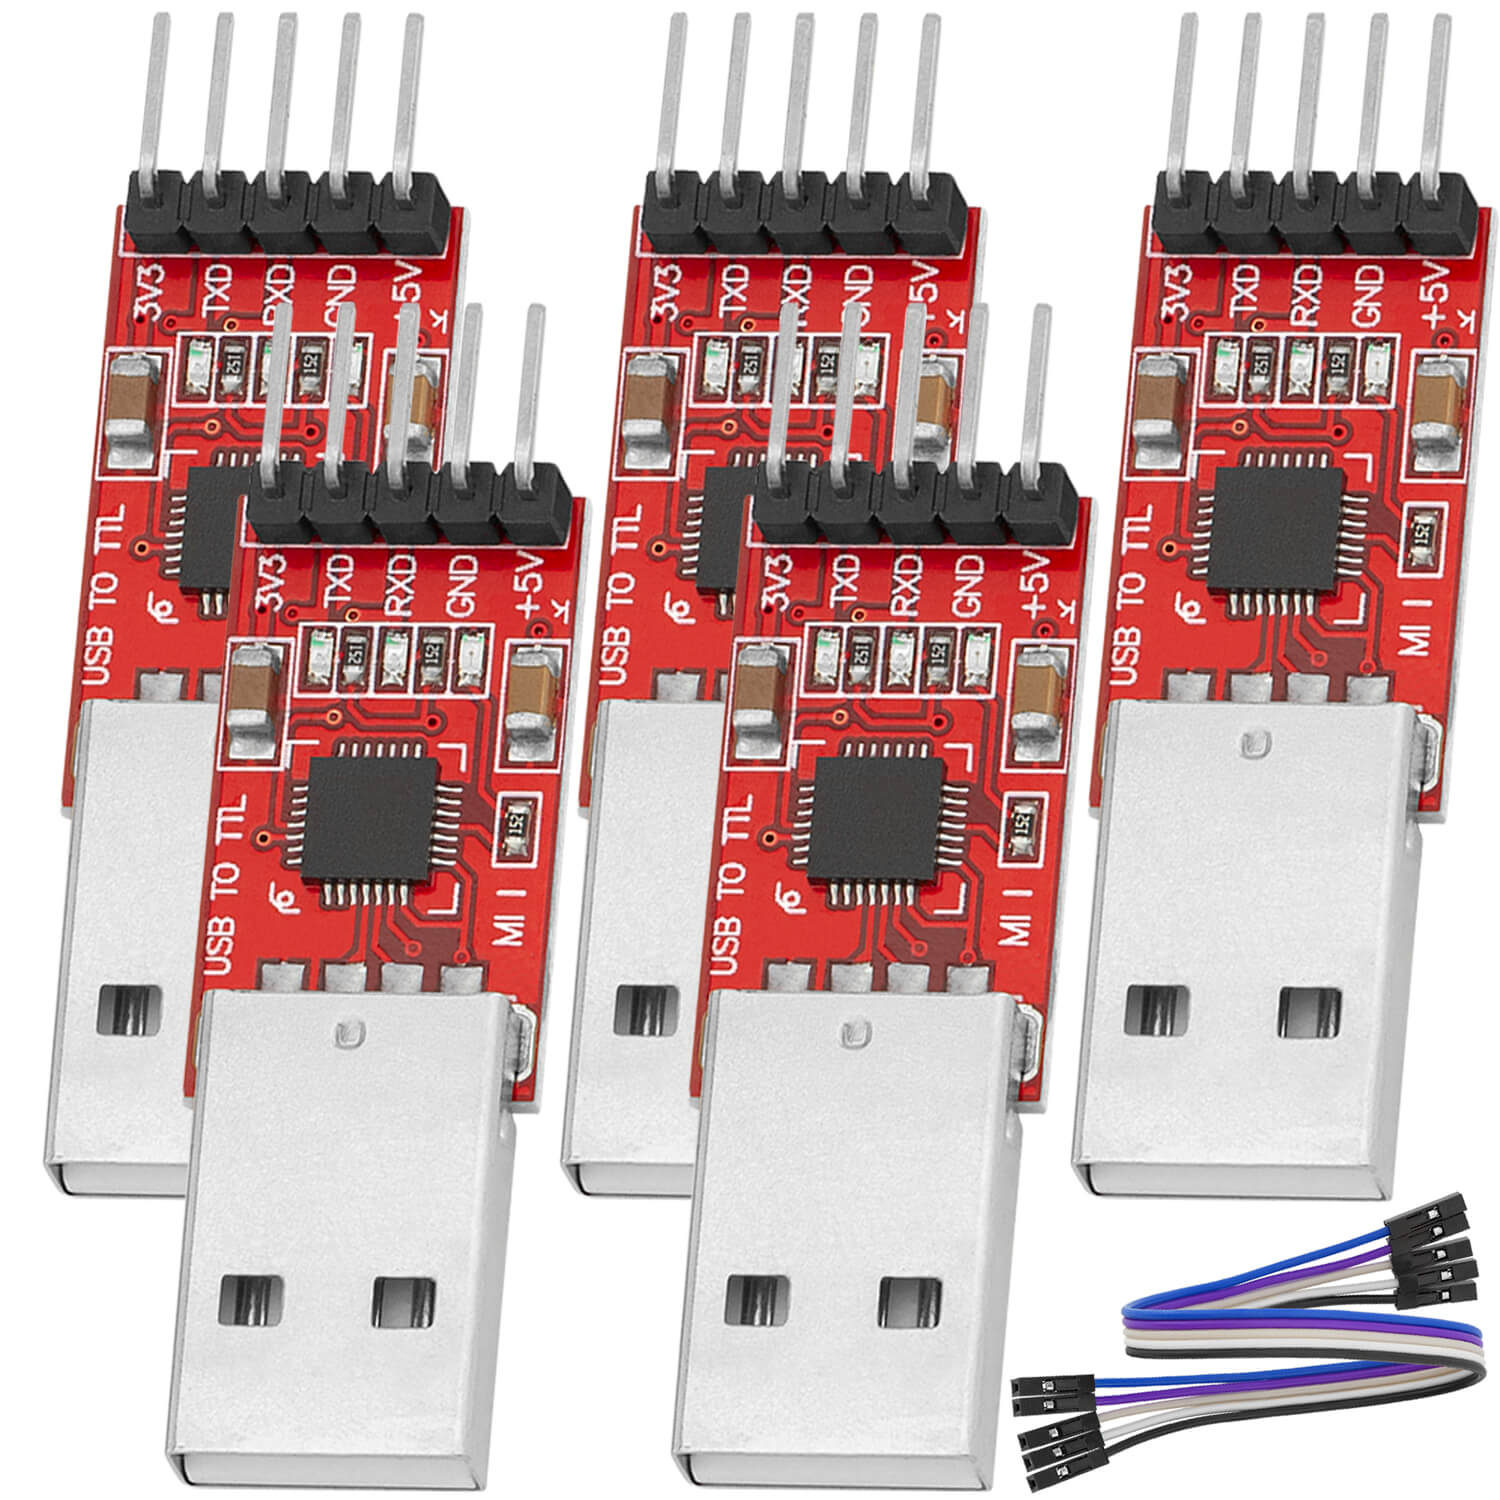 CP2102 USB zu TTL Konverter HW-598 für 3,3V und 5V mit Jumper Kabel - AZ-Delivery